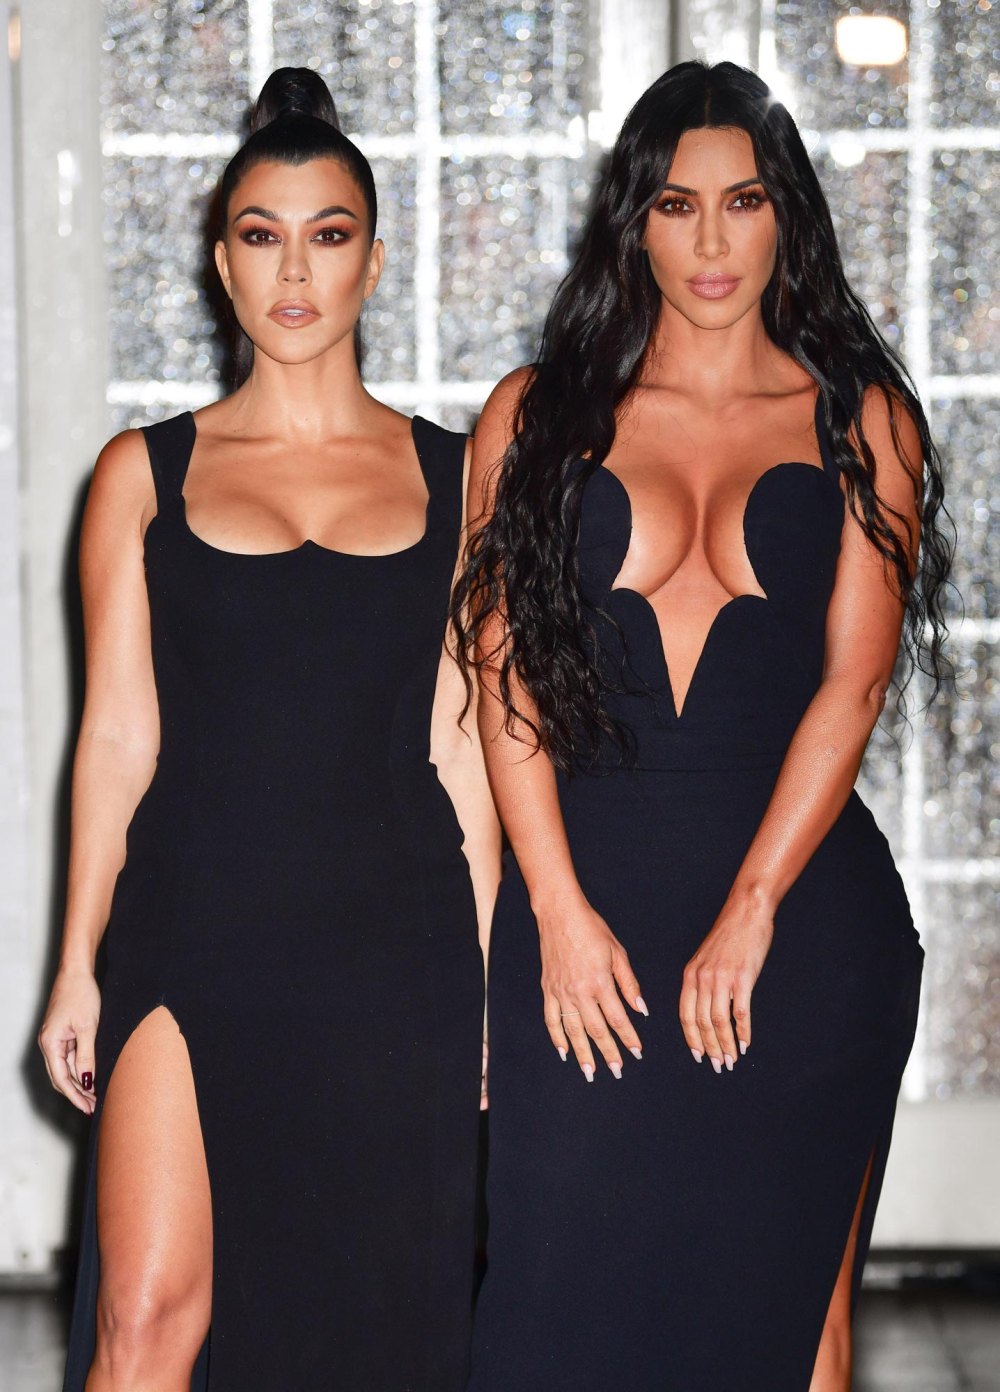 Kourtney Kardashian Pokes Fun at Kim Kardashians Infamous Diamond Earring Moment